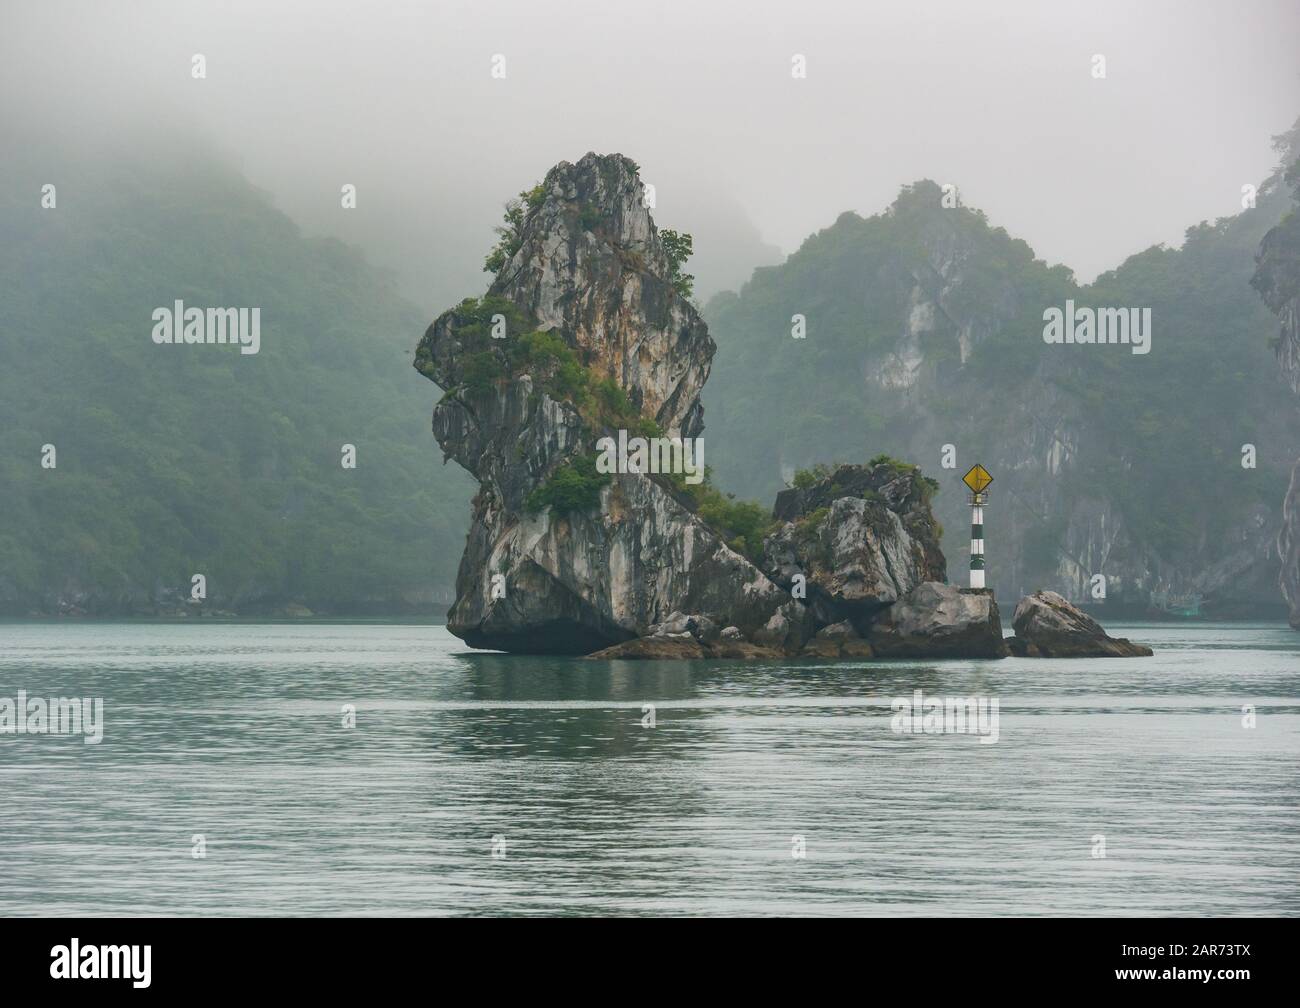 Marcatore di navigazione con formazione di roccia carsica calcarea in tempo nebbia, Lan ha Bay, Vietnam, Asia Foto Stock